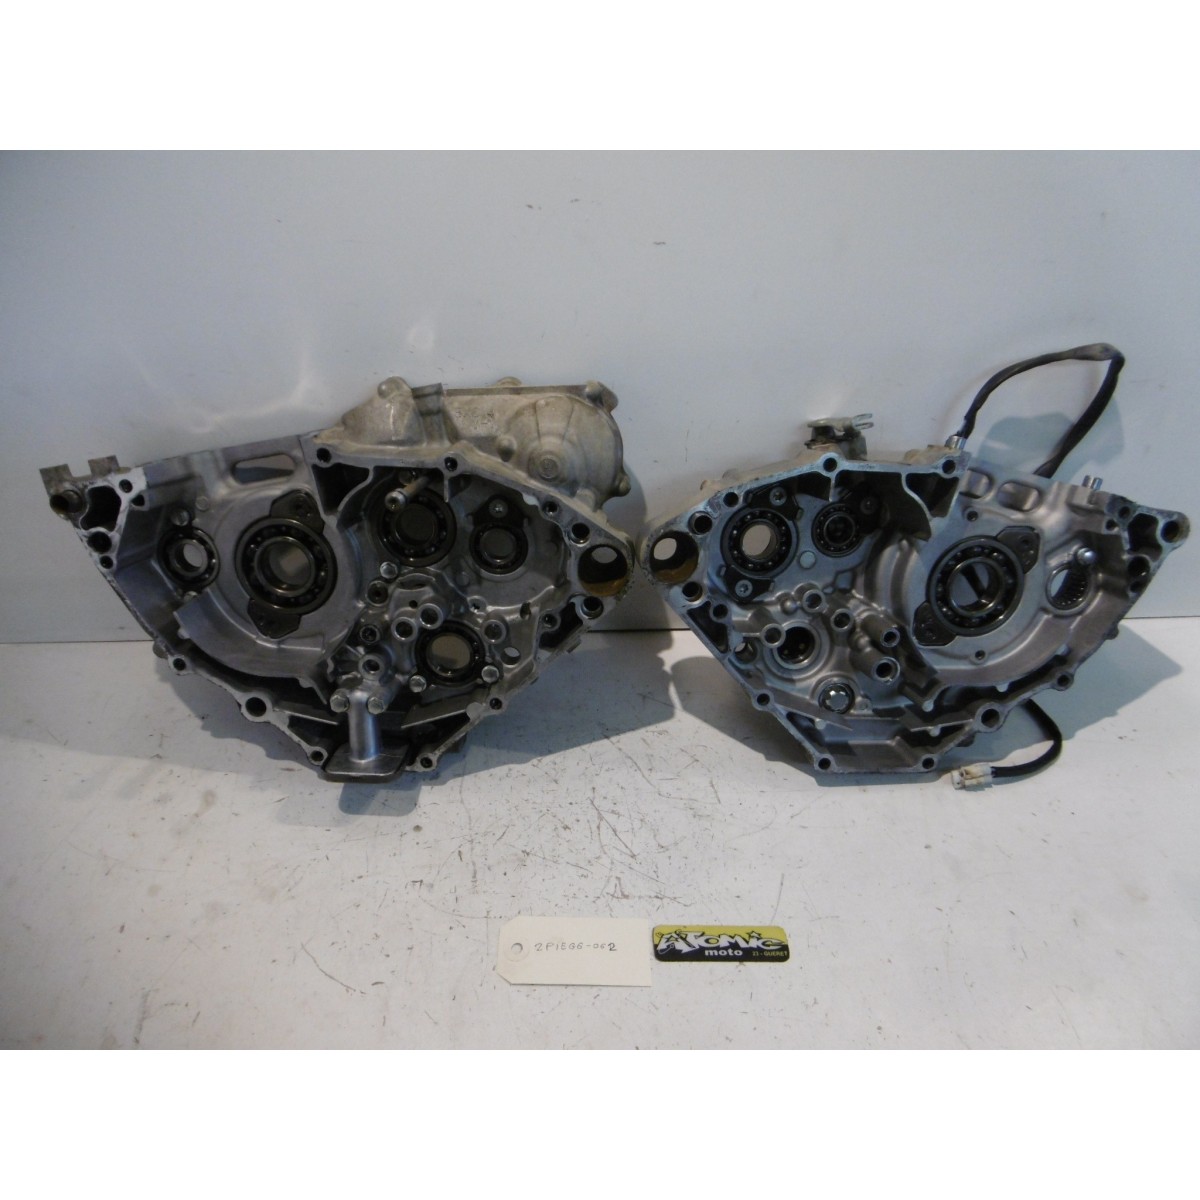 Carters moteur centraux GASGAS 300 FSR 4T 2014